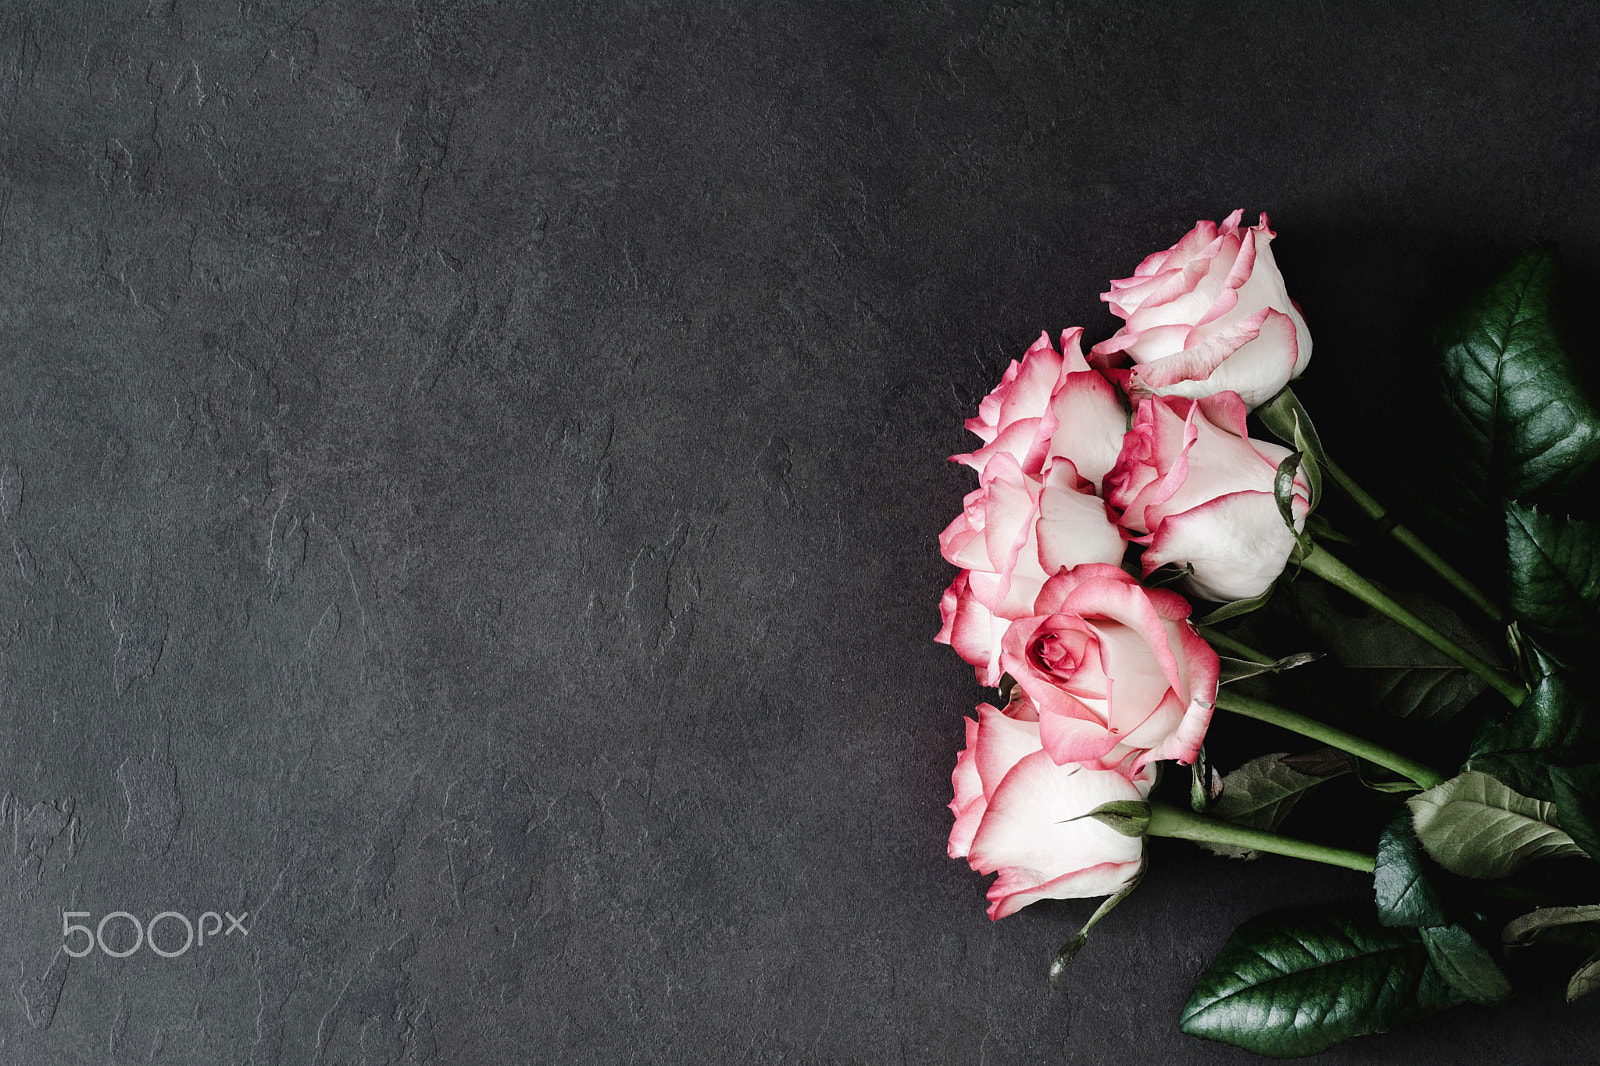 Nikon D7100 sample photo. Stylish pink roses on dark stone background photography